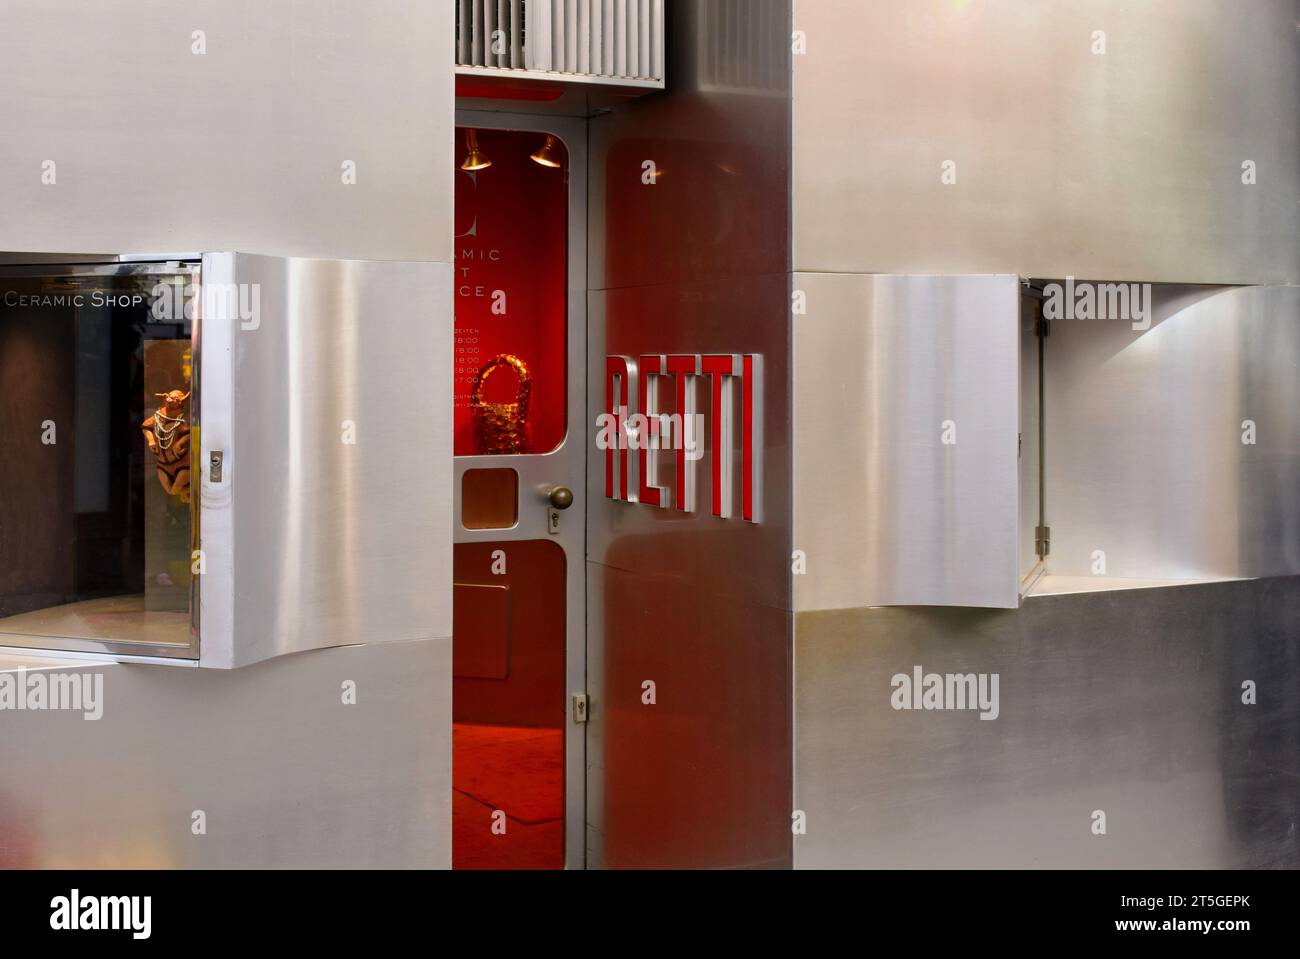 Die Außenansicht des berühmten Retti Ceramic Art Shop aus gebürstetem Edelstahl. Wien, Österreich. Glastür. Name in roten Keramikbuchstaben speichern Stockfoto